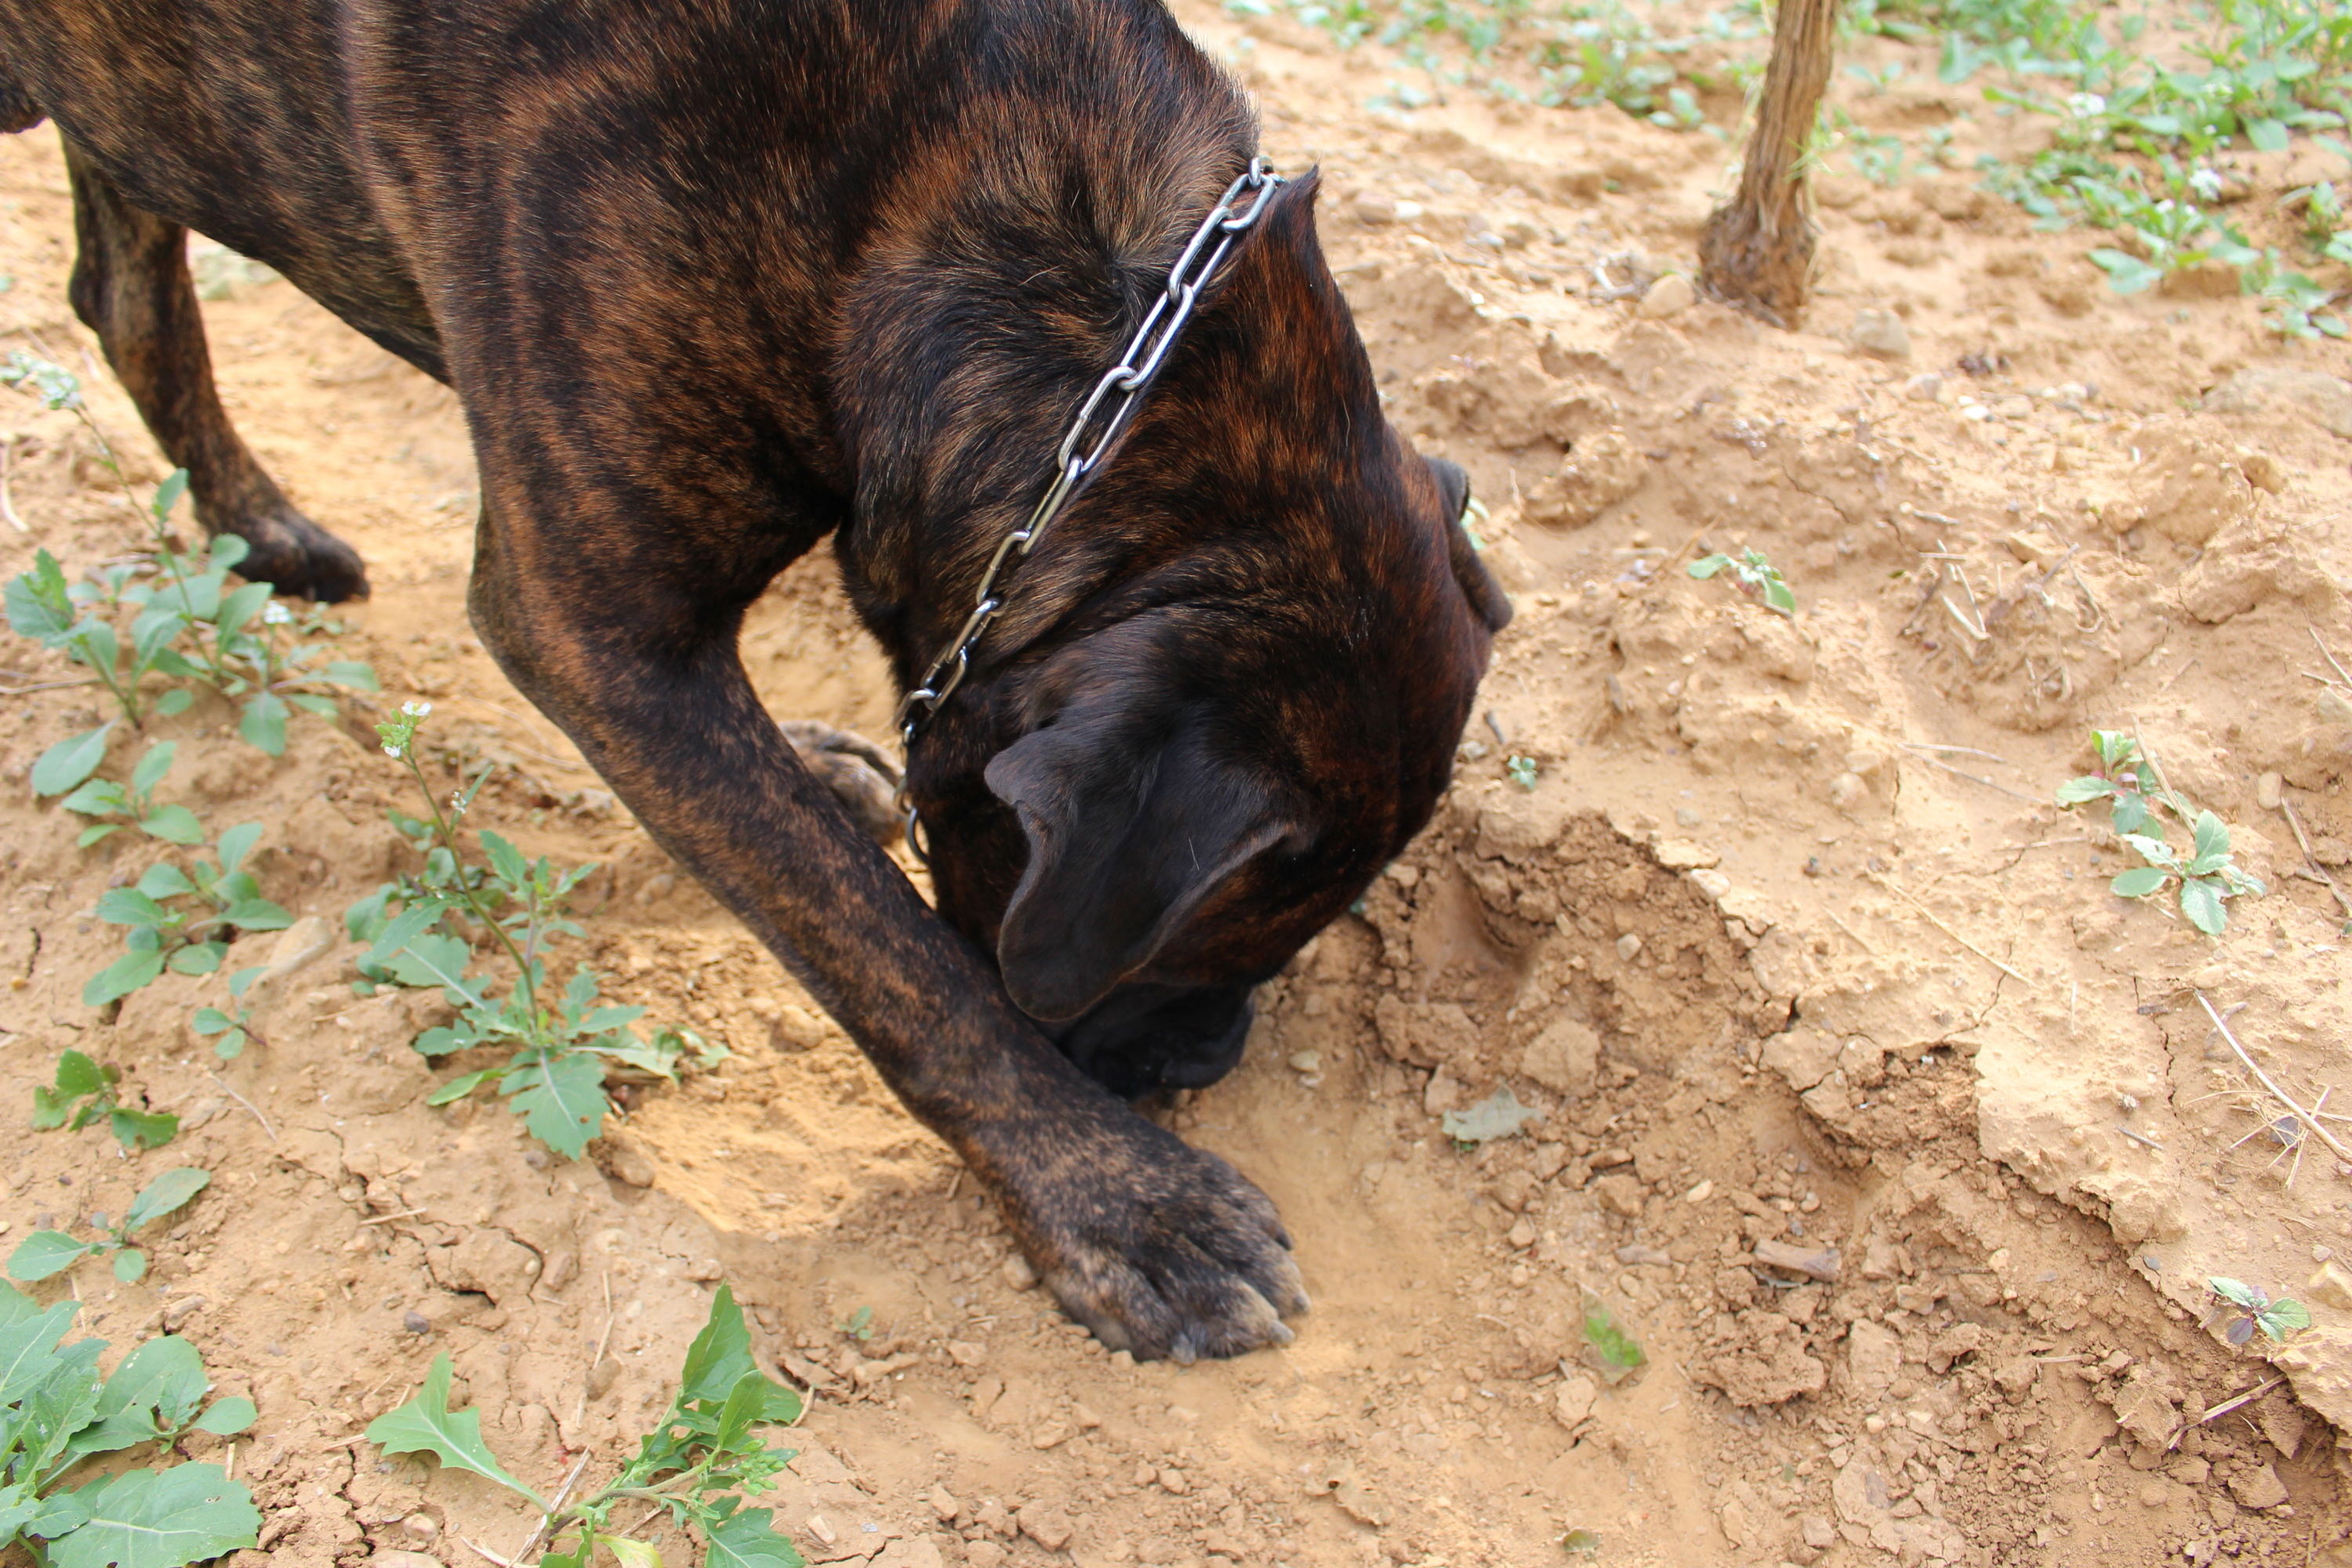 Pourquoi mon chien gratte-t-il le sol ?